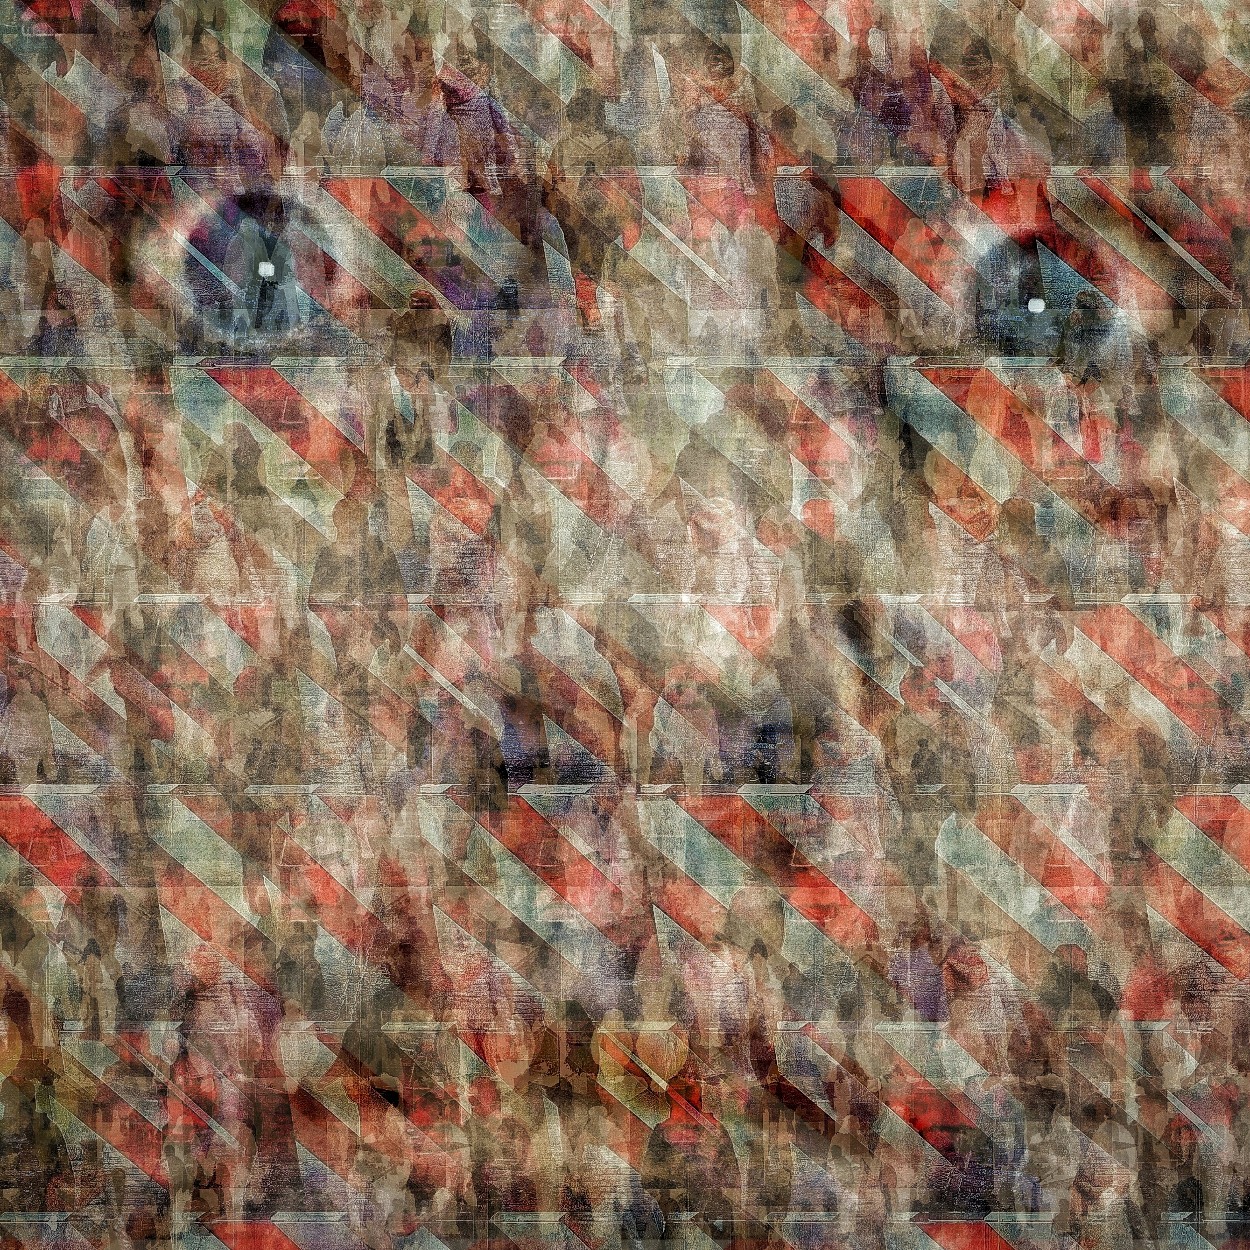 Een selfie met verschrikte, grote ogen aanschouwt het wereldtoneel in deze collage 2.0 van Ruben van Gogh